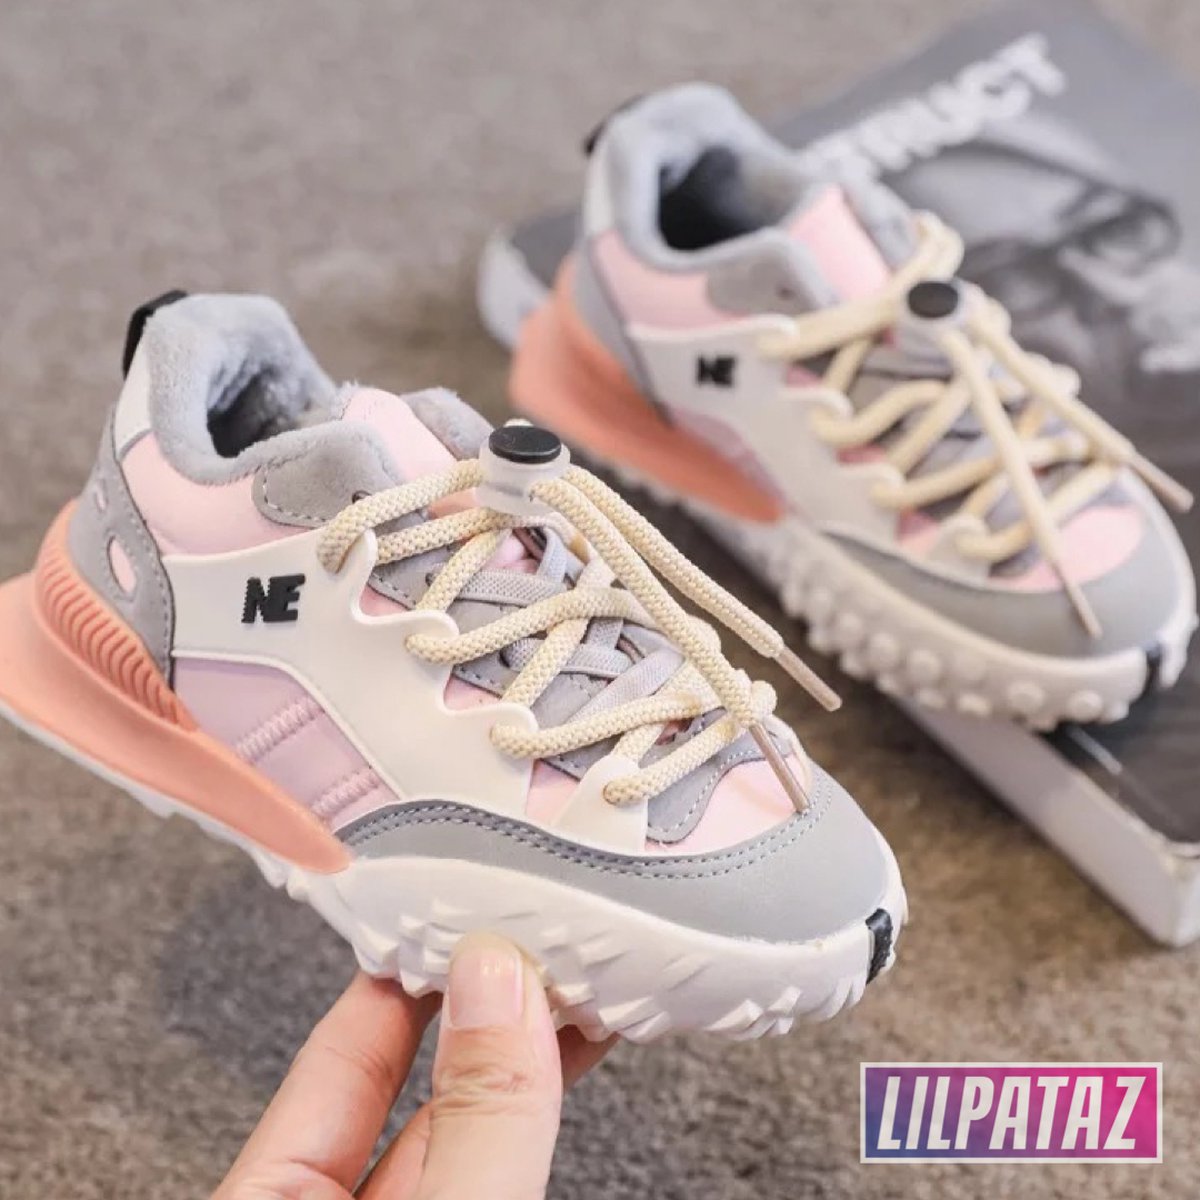 LilPataz Moon Spikes - Lage sneakers - meisjes kids kinderen - Roze Wit - Maat 30